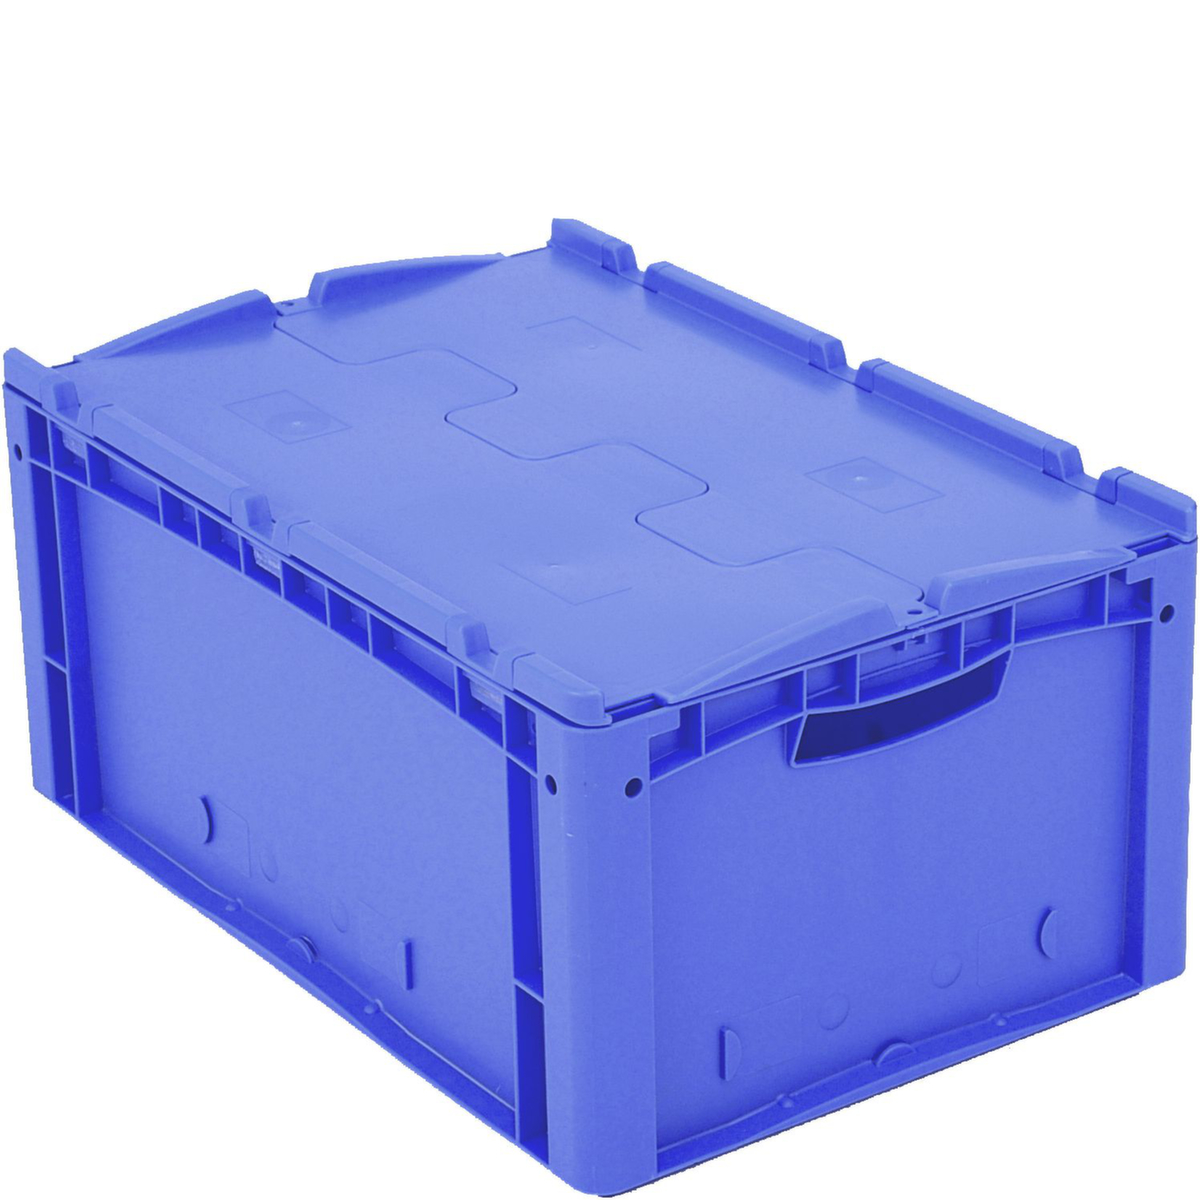 Euronorm-Stapelbehälter mit Doppelboden, blau, Inhalt 49 l, Zweiteiliger Scharnierdeckel Standard 2 ZOOM